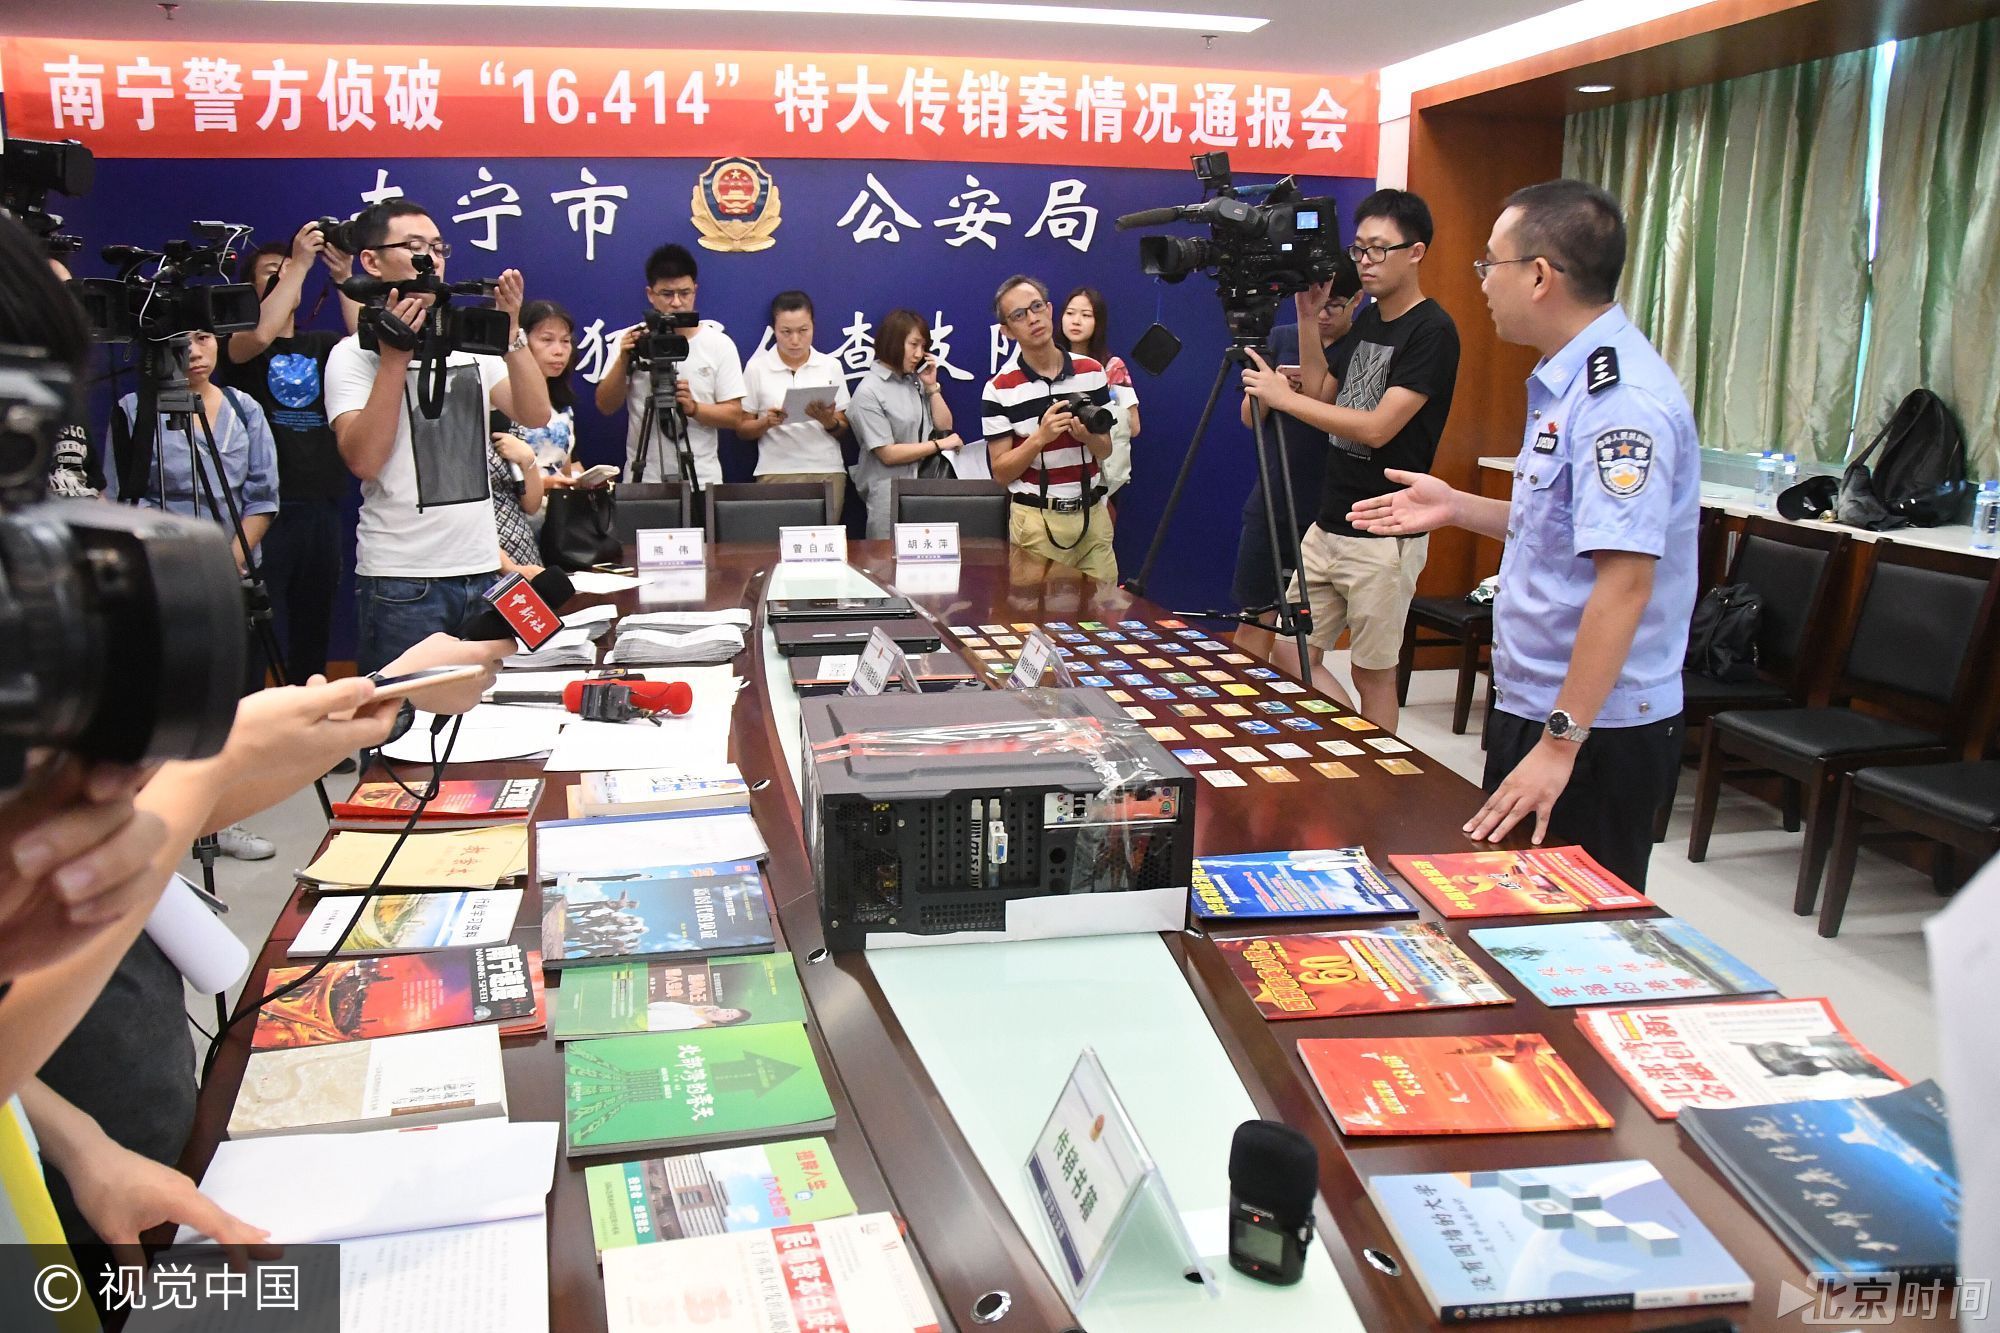 “16.414”特大传销专案的成功侦破，彰显了南宁警方打击传销违法犯罪的坚定决心和蓬勃战斗力。